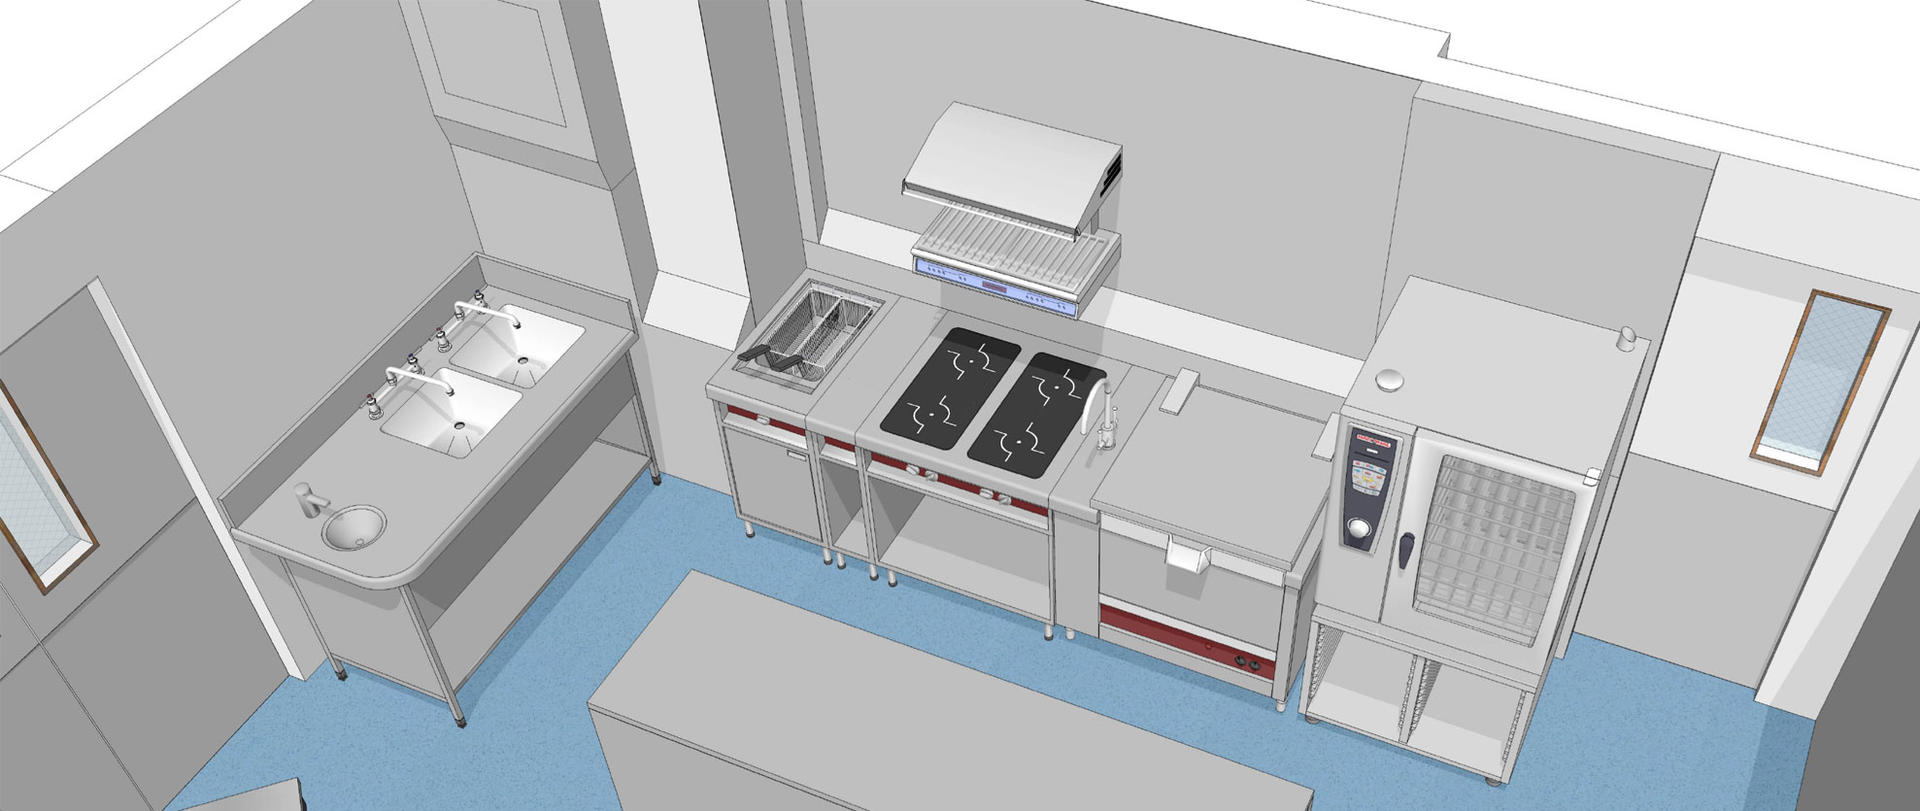 Aménagement petite cuisine professionnelle : Optimiser l’espace, les équipements et le flux de travail